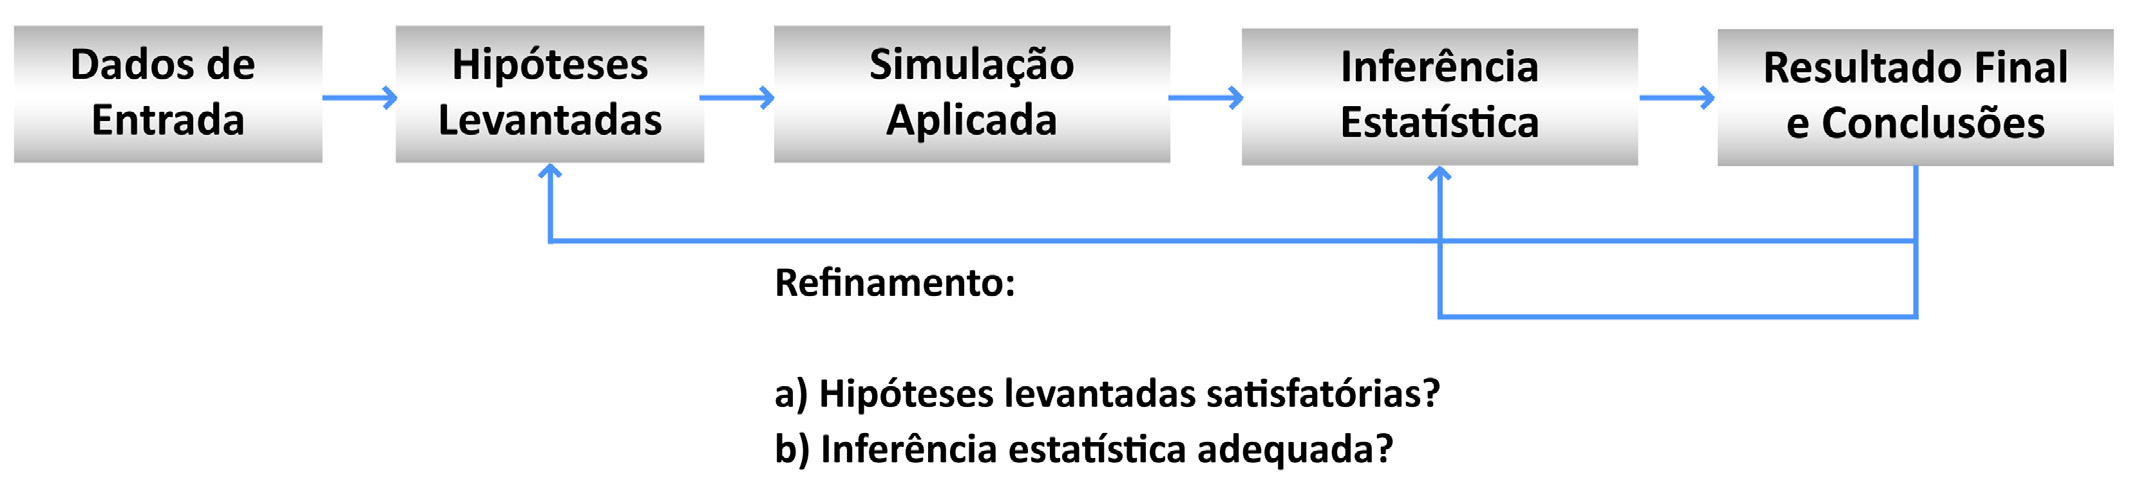 III. Simulação aplicada (utilização do RiskSim) IV. Inferência estatística (geração dos histogramas e gráficos) V.